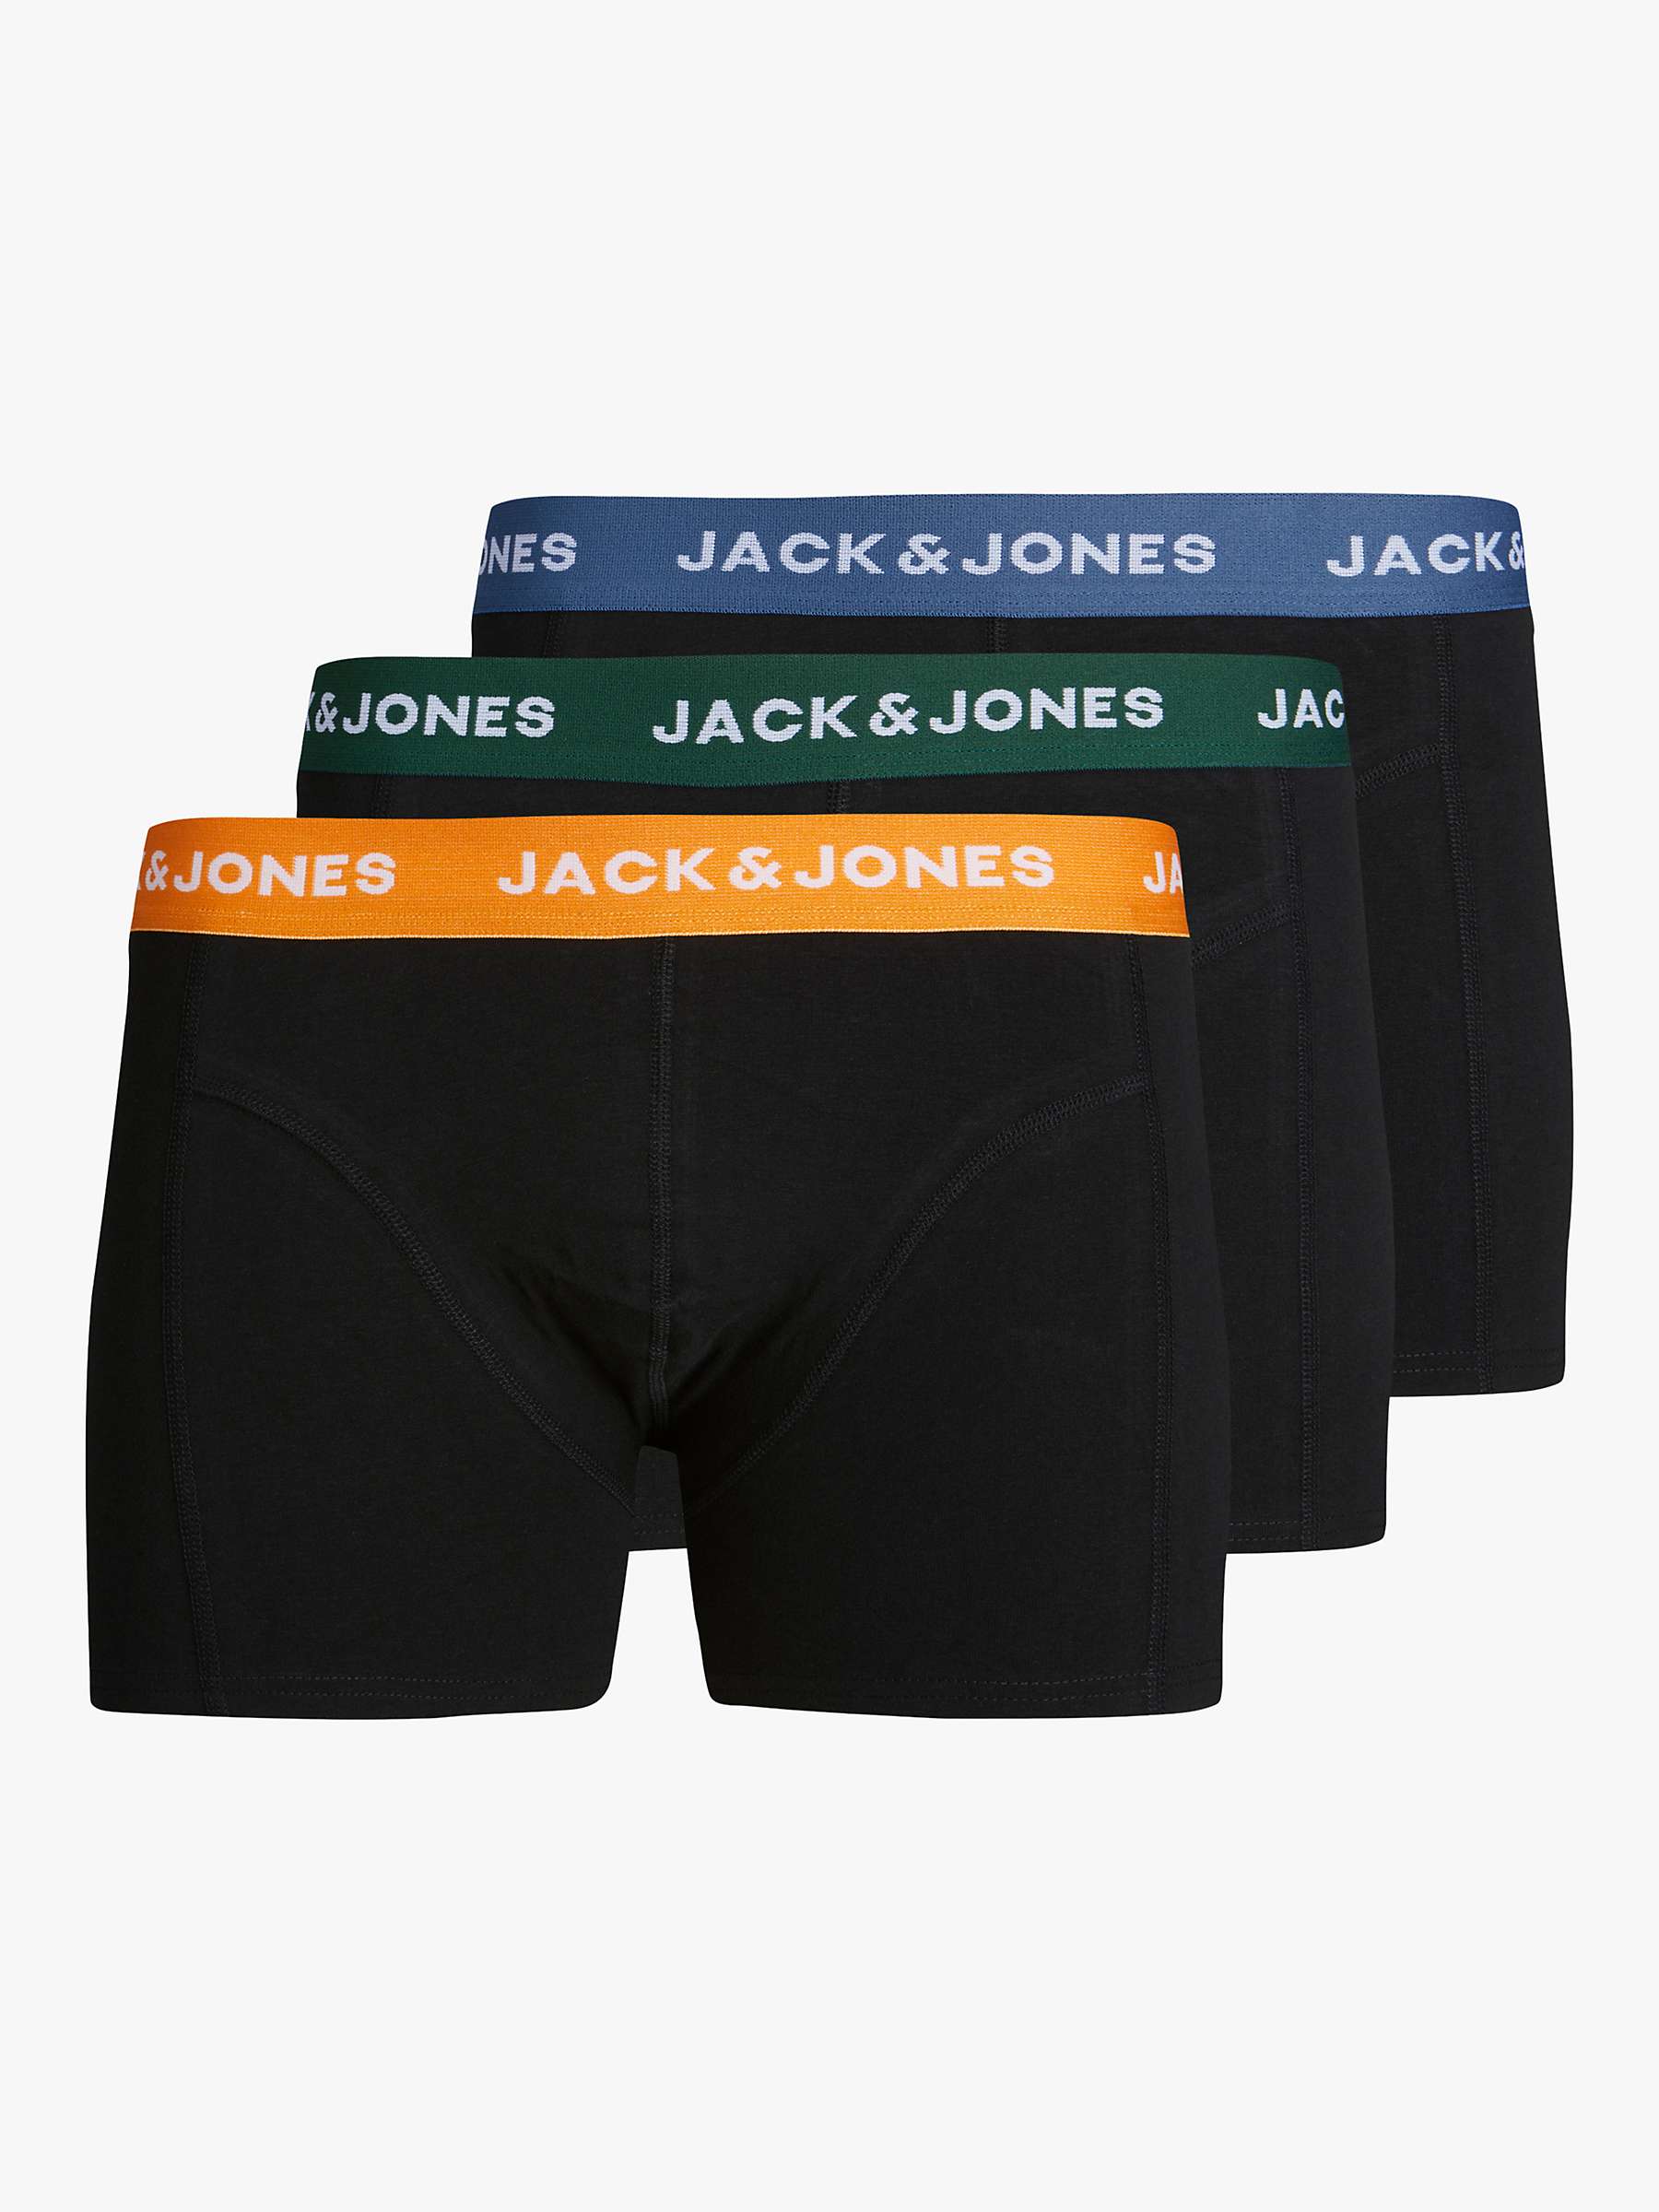 Buy Jack & Jones Kids' Logo Trunks, Pack of 3, Green/Back/Multi Online at johnlewis.com